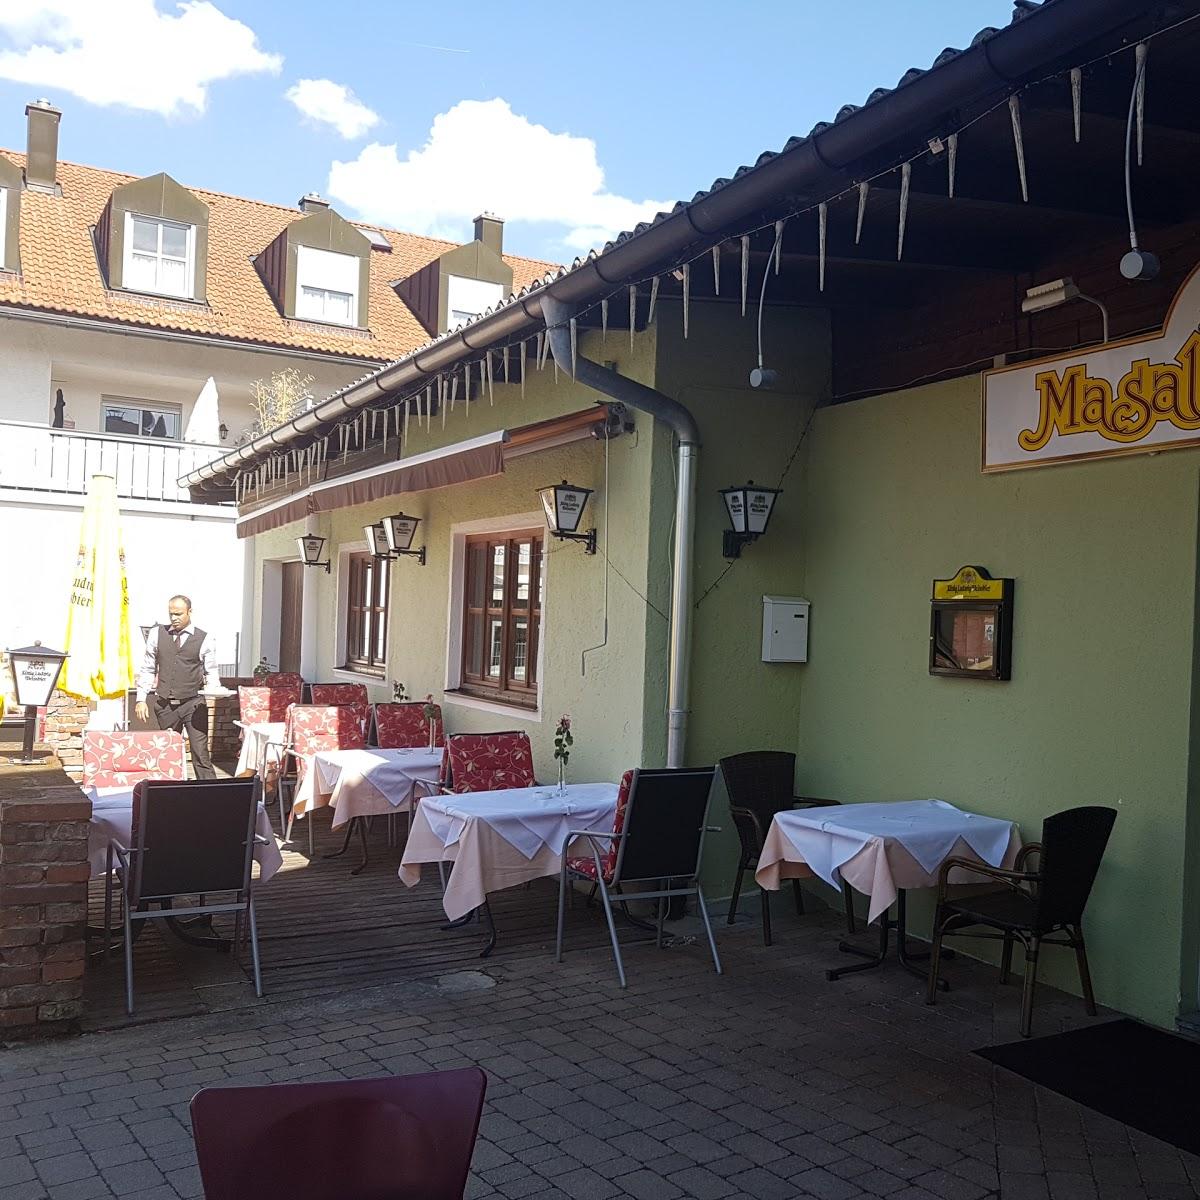 Restaurant "Masala" in  Holzkirchen